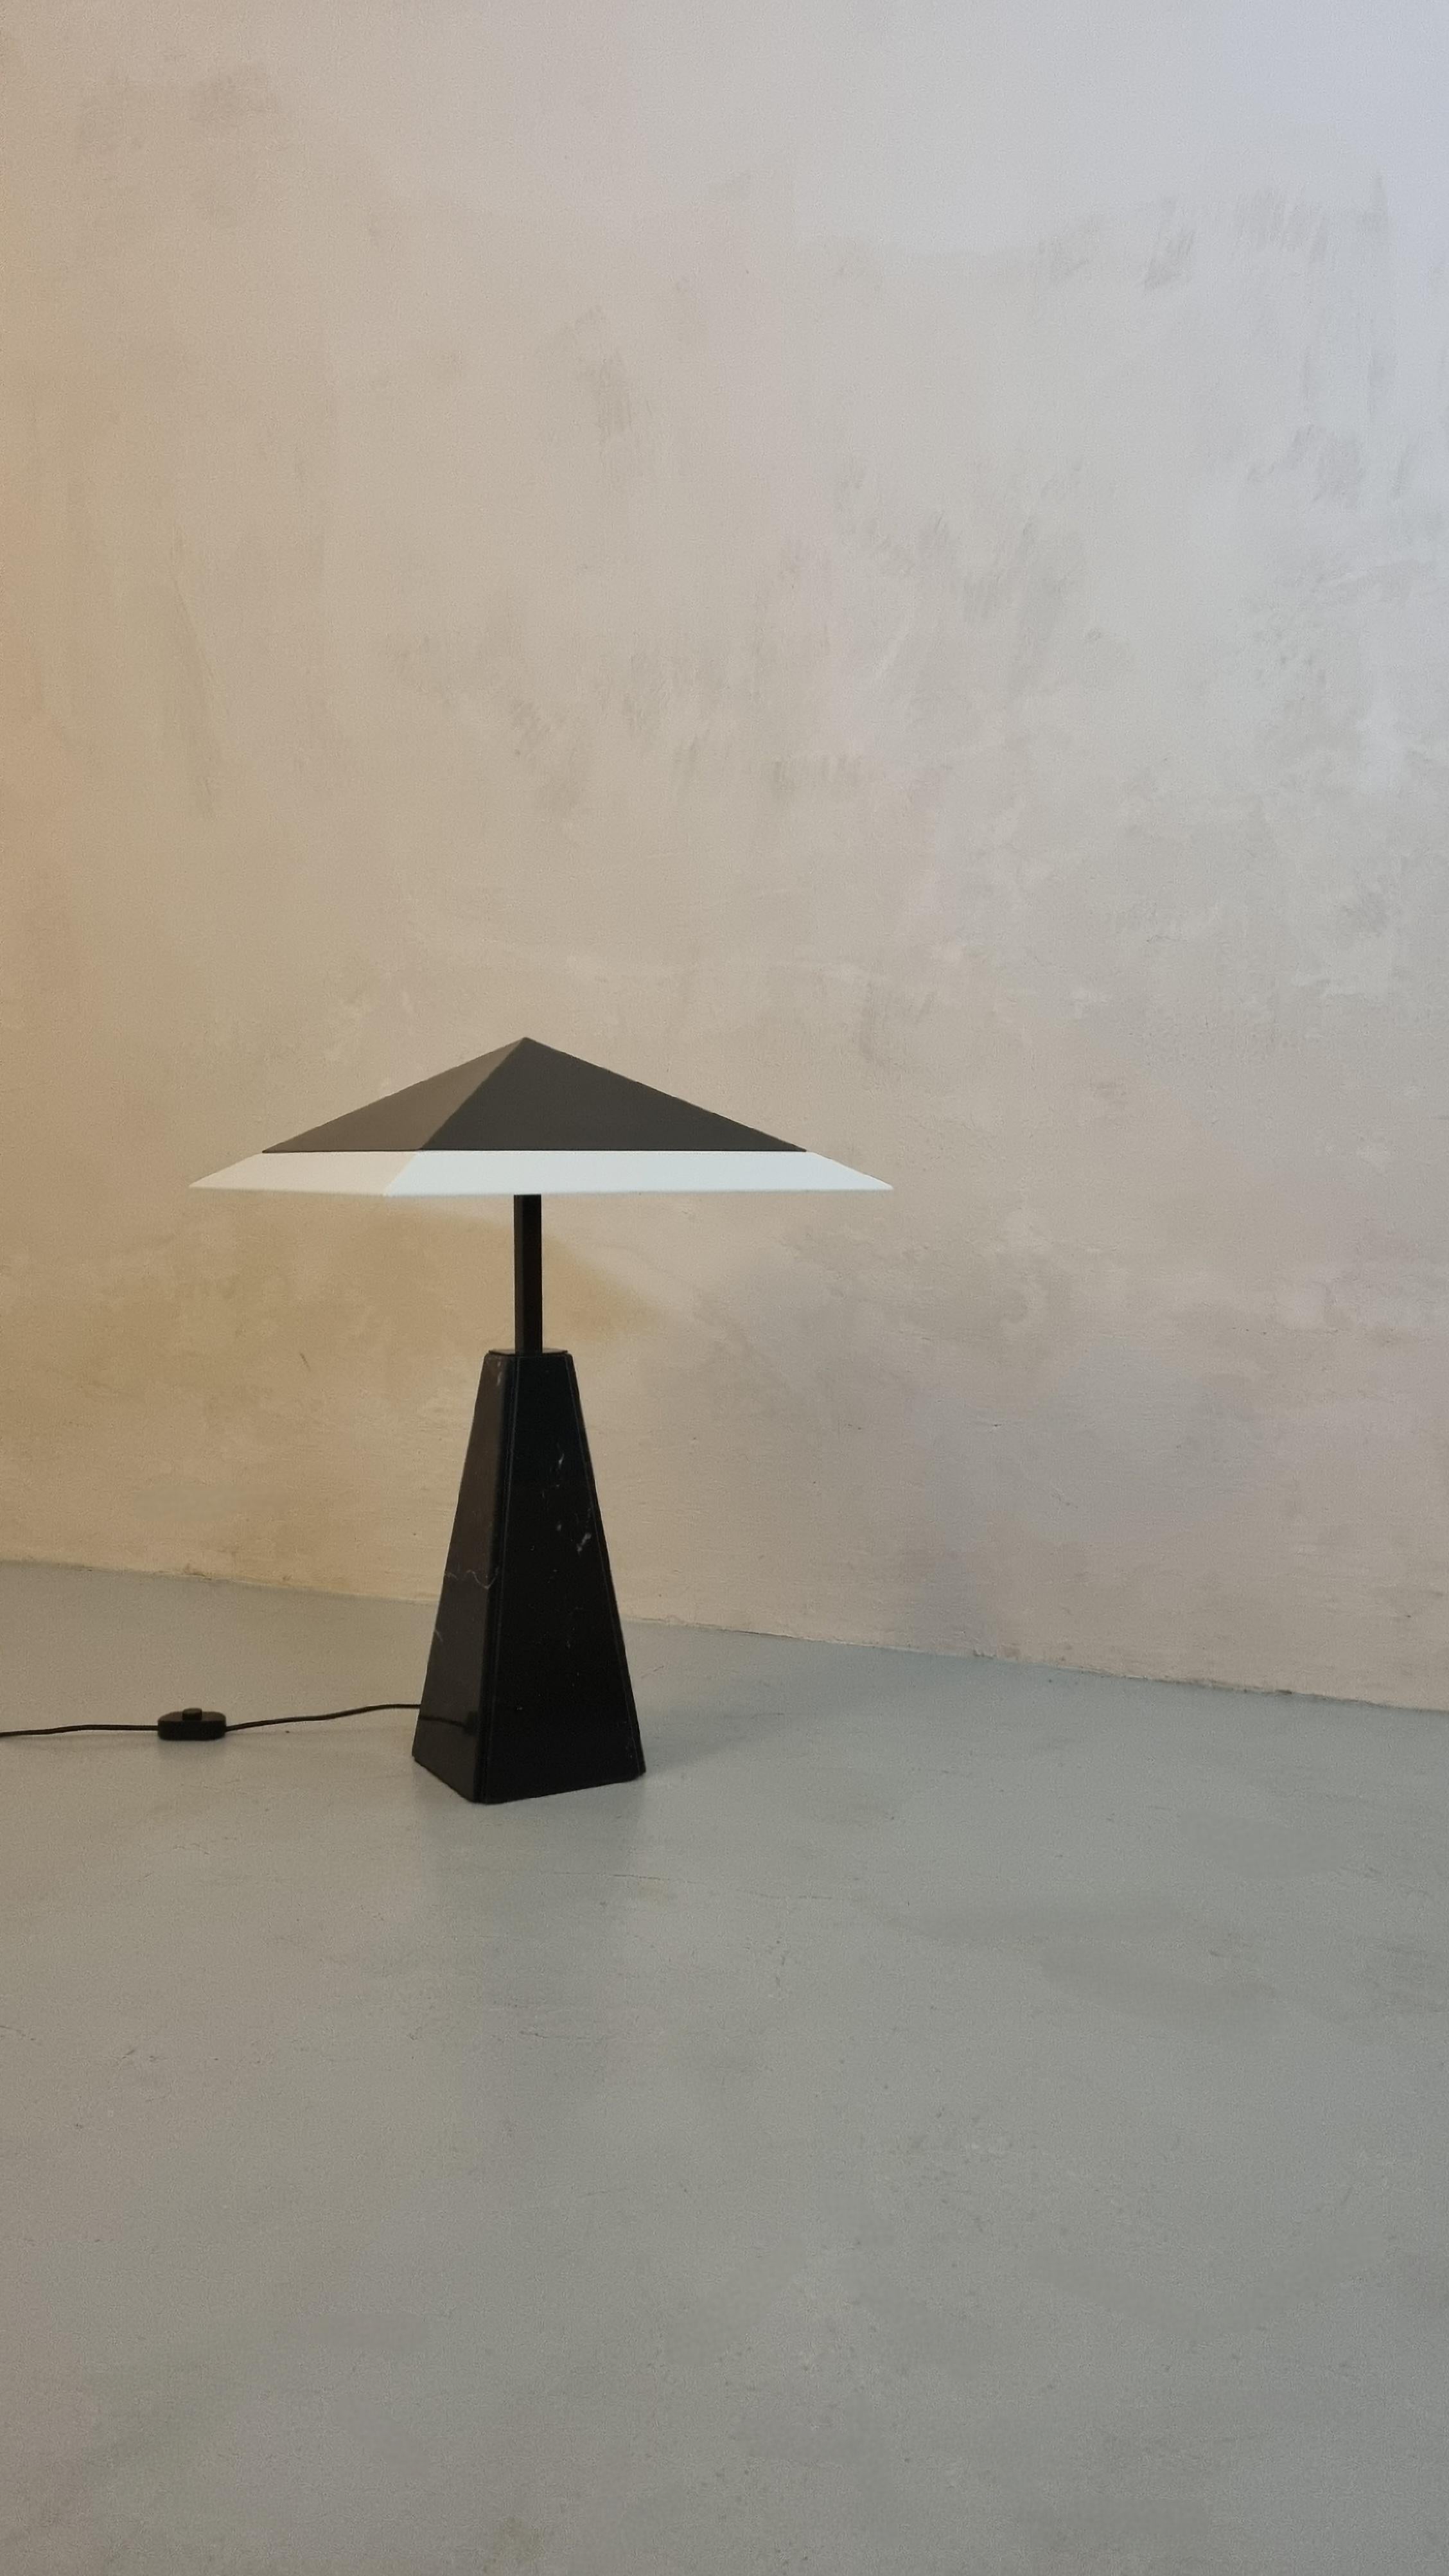 Lampada da tavolo modello Abat Jour disegnata da Cini Boeri nel 1970 per Arteluce, prima produzione.
Base in marmo nero marquina, struttura in acciaio verniciato, paralume in perspex e lamiera verniciata, la lampada monta 4 lampadine.
Una rara prima